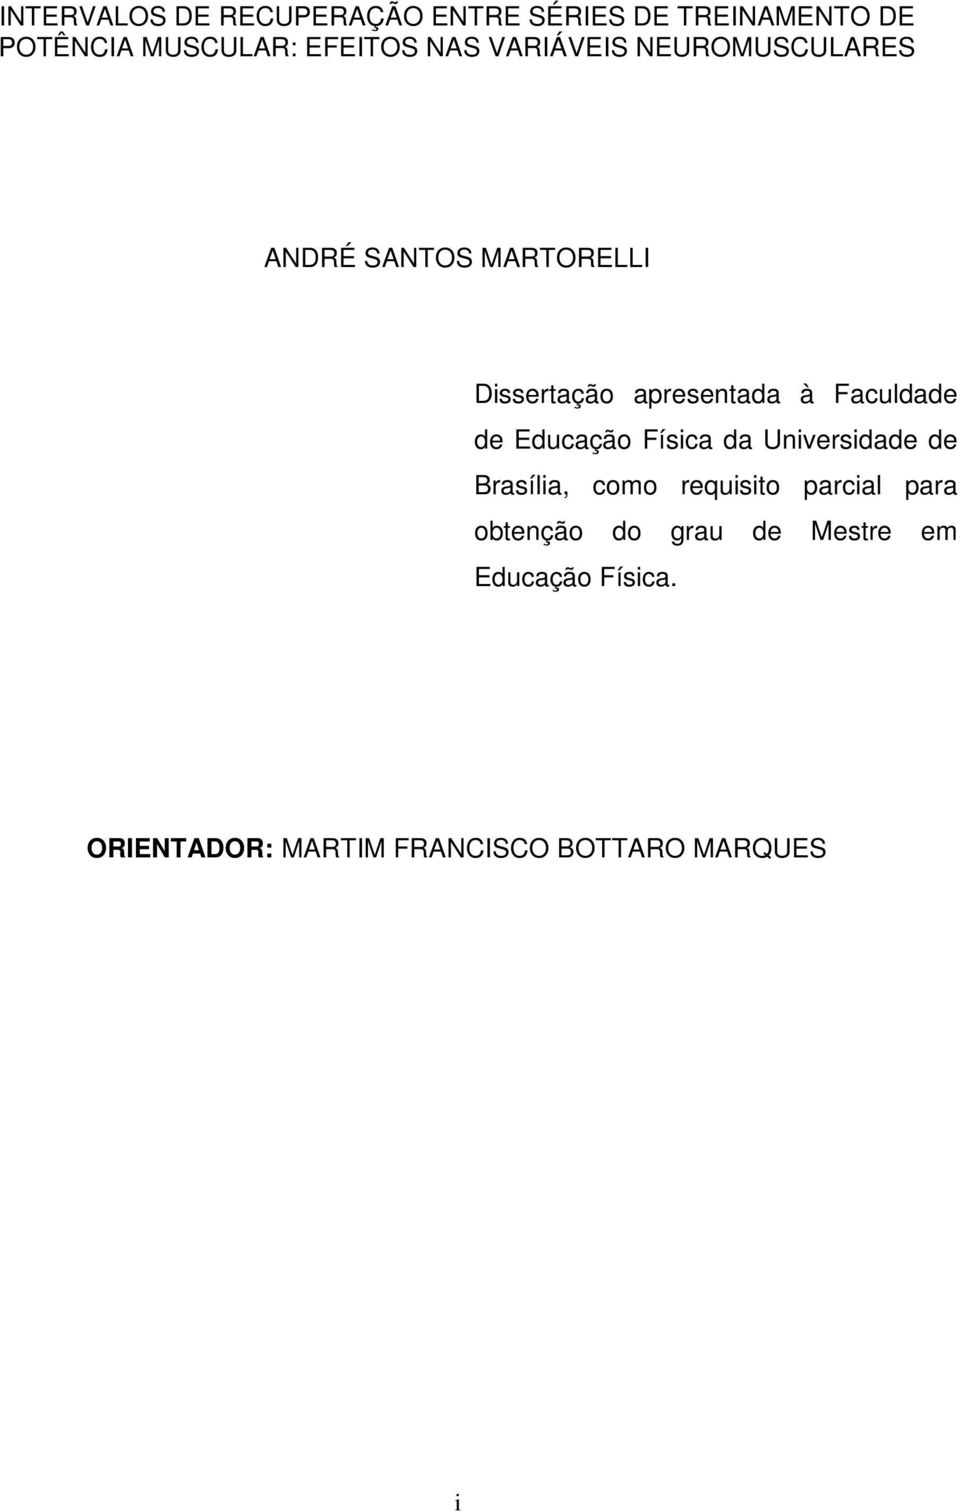 Faculdade de Educação Física da Universidade de Brasília, como requisito parcial para